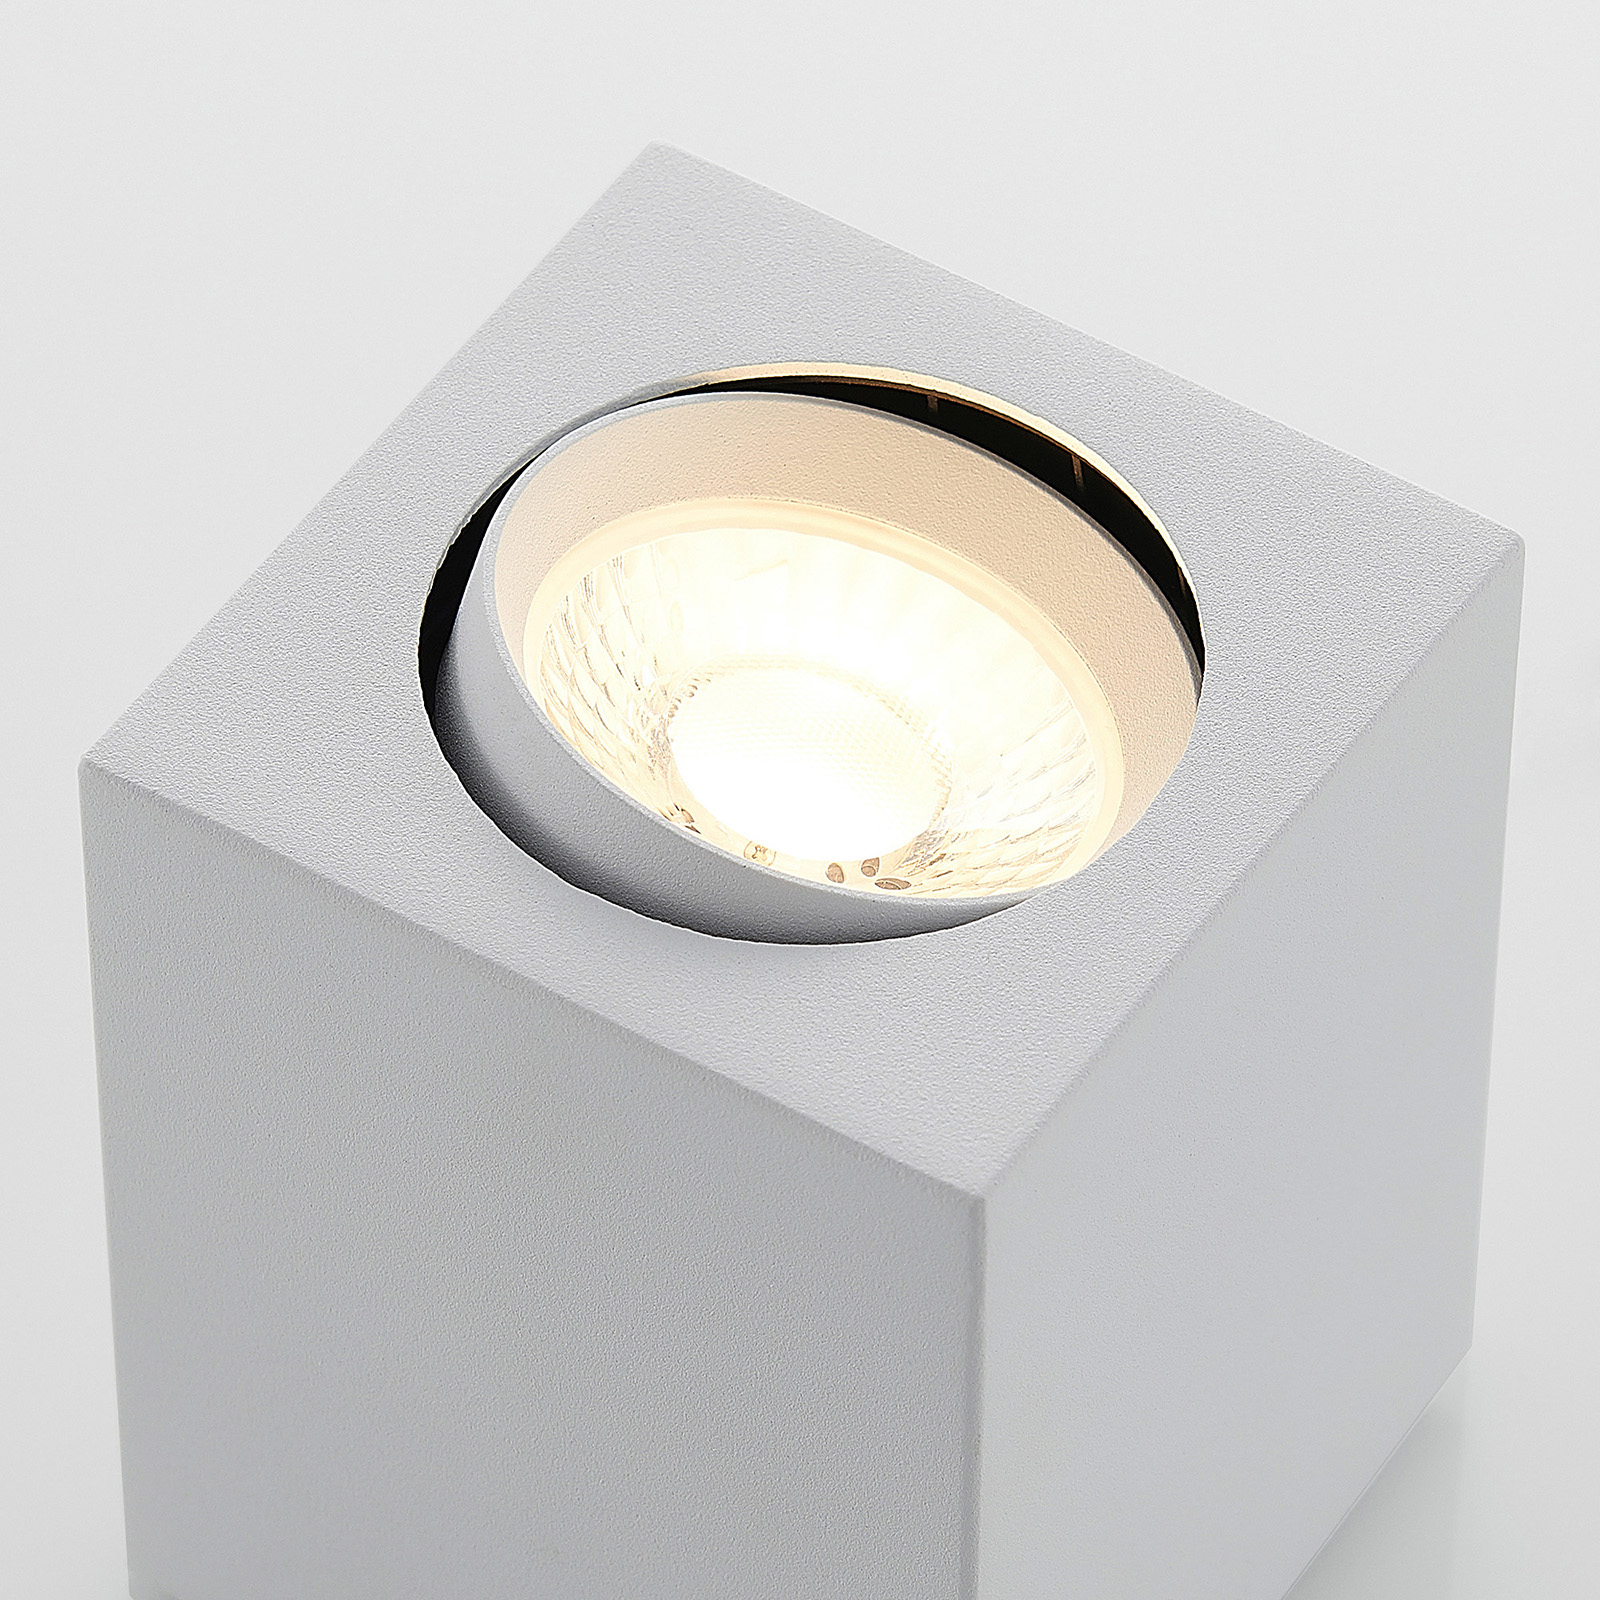 Arcchio Basir spot sufitowy LED biały, 8W